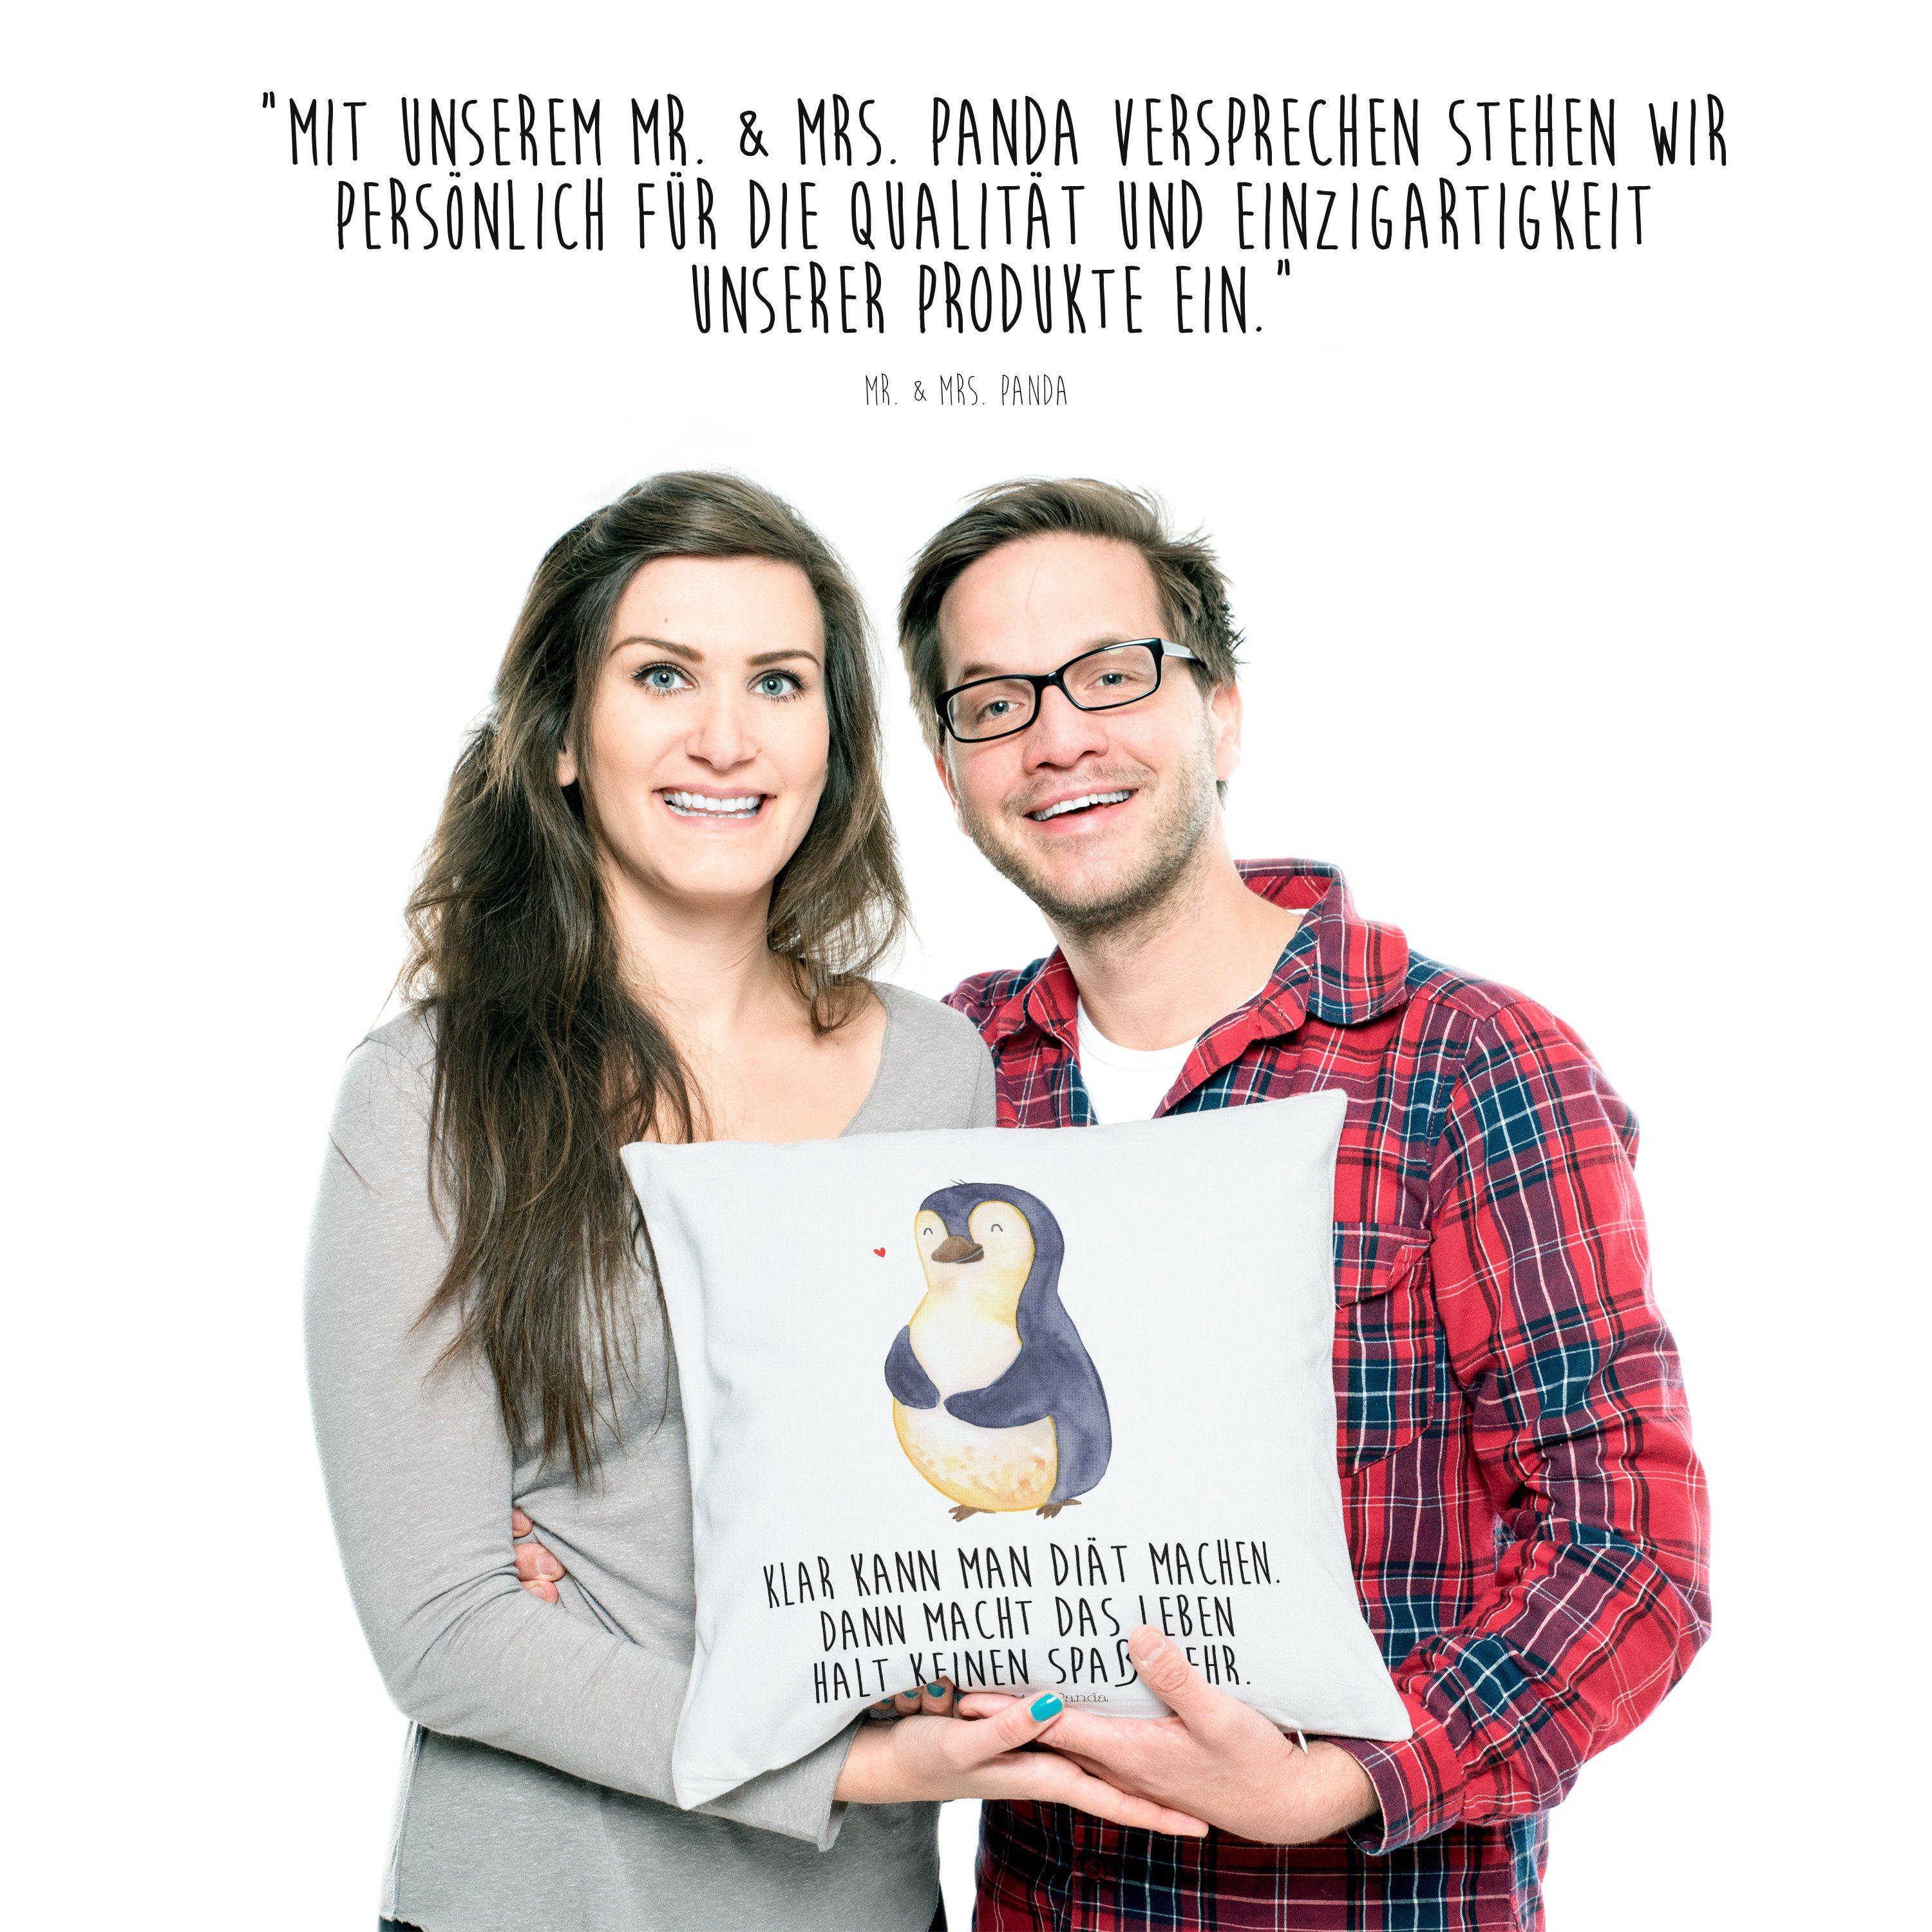 Mr. & Mrs. Panda Dekokissen Geschenk, Motivkissen, - Diät dick, Abnehmen, Kissenhü Pinguin - Weiß